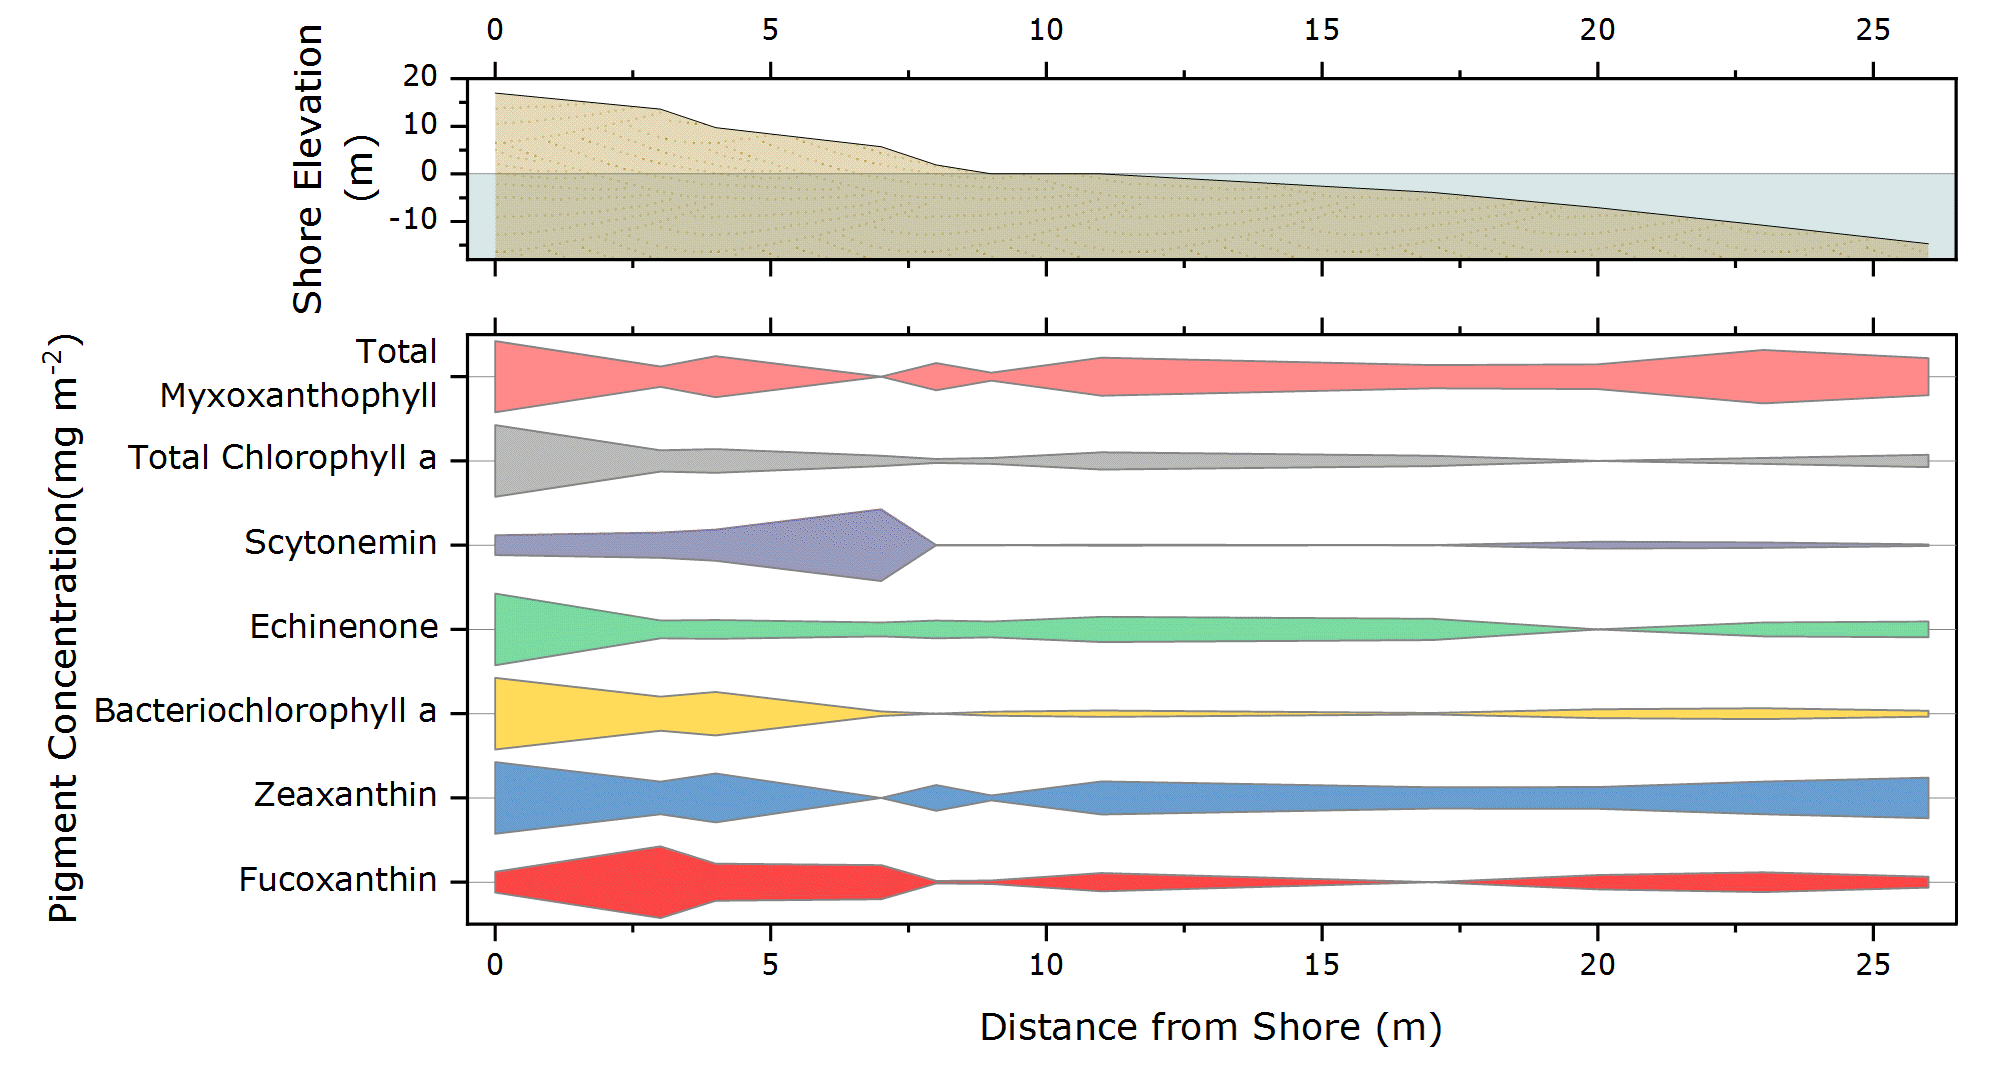 OriginPro und Origin 2020: Kite-Diagramm mit einzelnen Datensätzen normalisiert auf 100. Als zweiter Layer wurde ein Shoreline-Profil oberhalb des Kite-Diagramms hinzugefügt